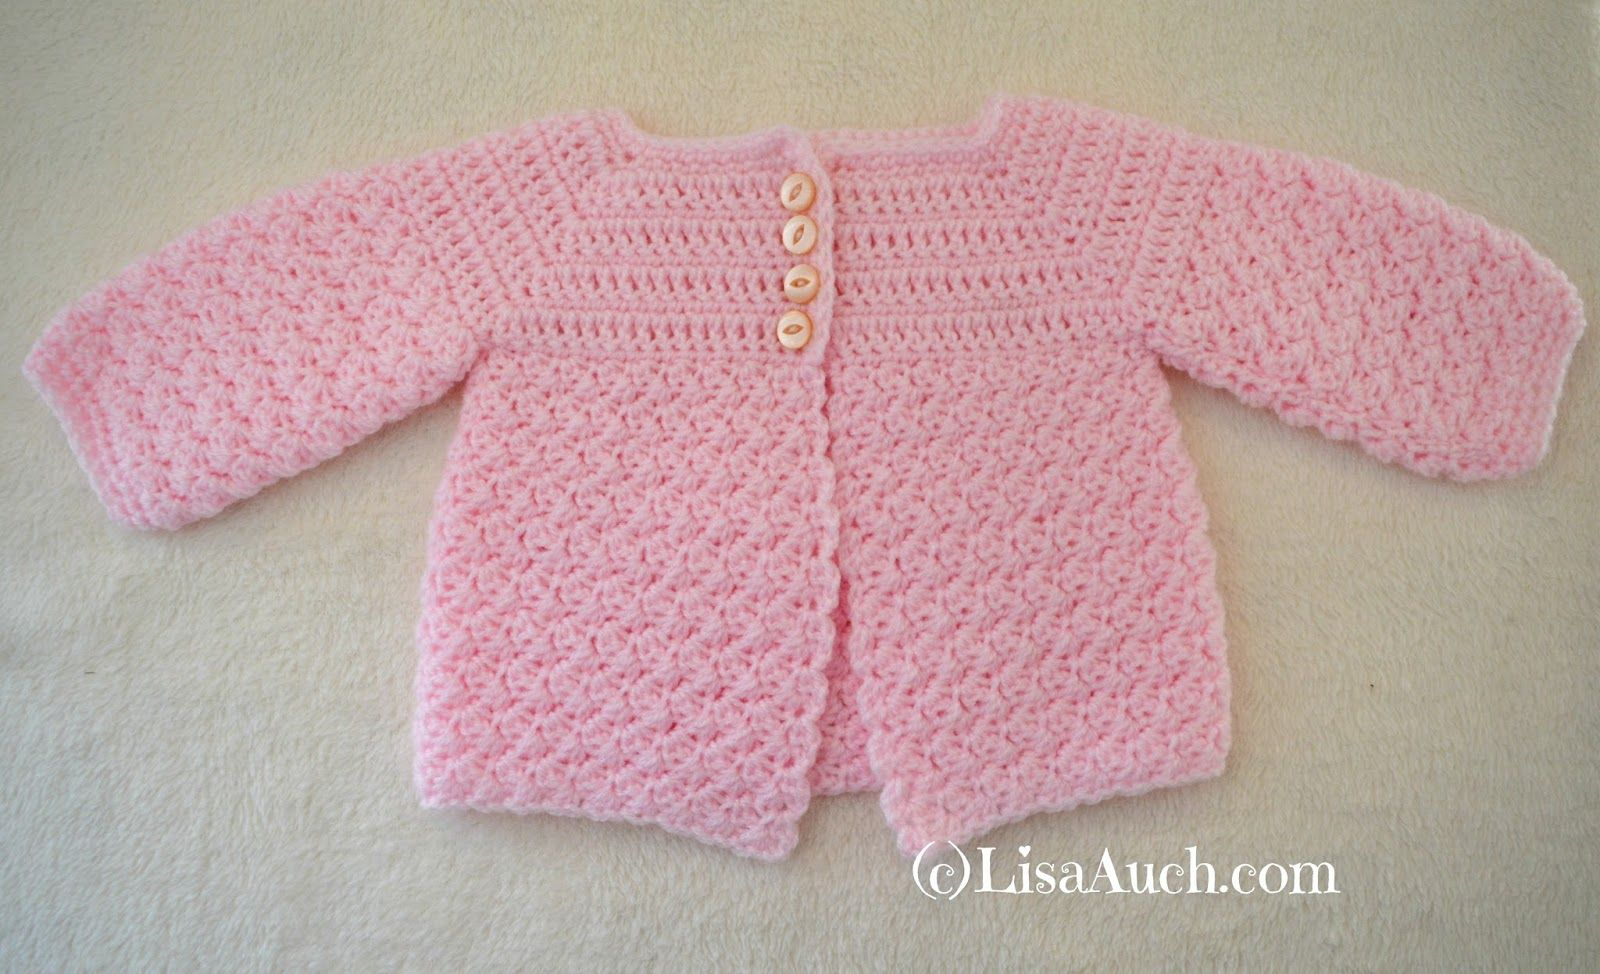 Crochet Newborn Sweater Pattern Crochet Ba Cardigan Easy Free Pattern Ba Stuff Pinterest